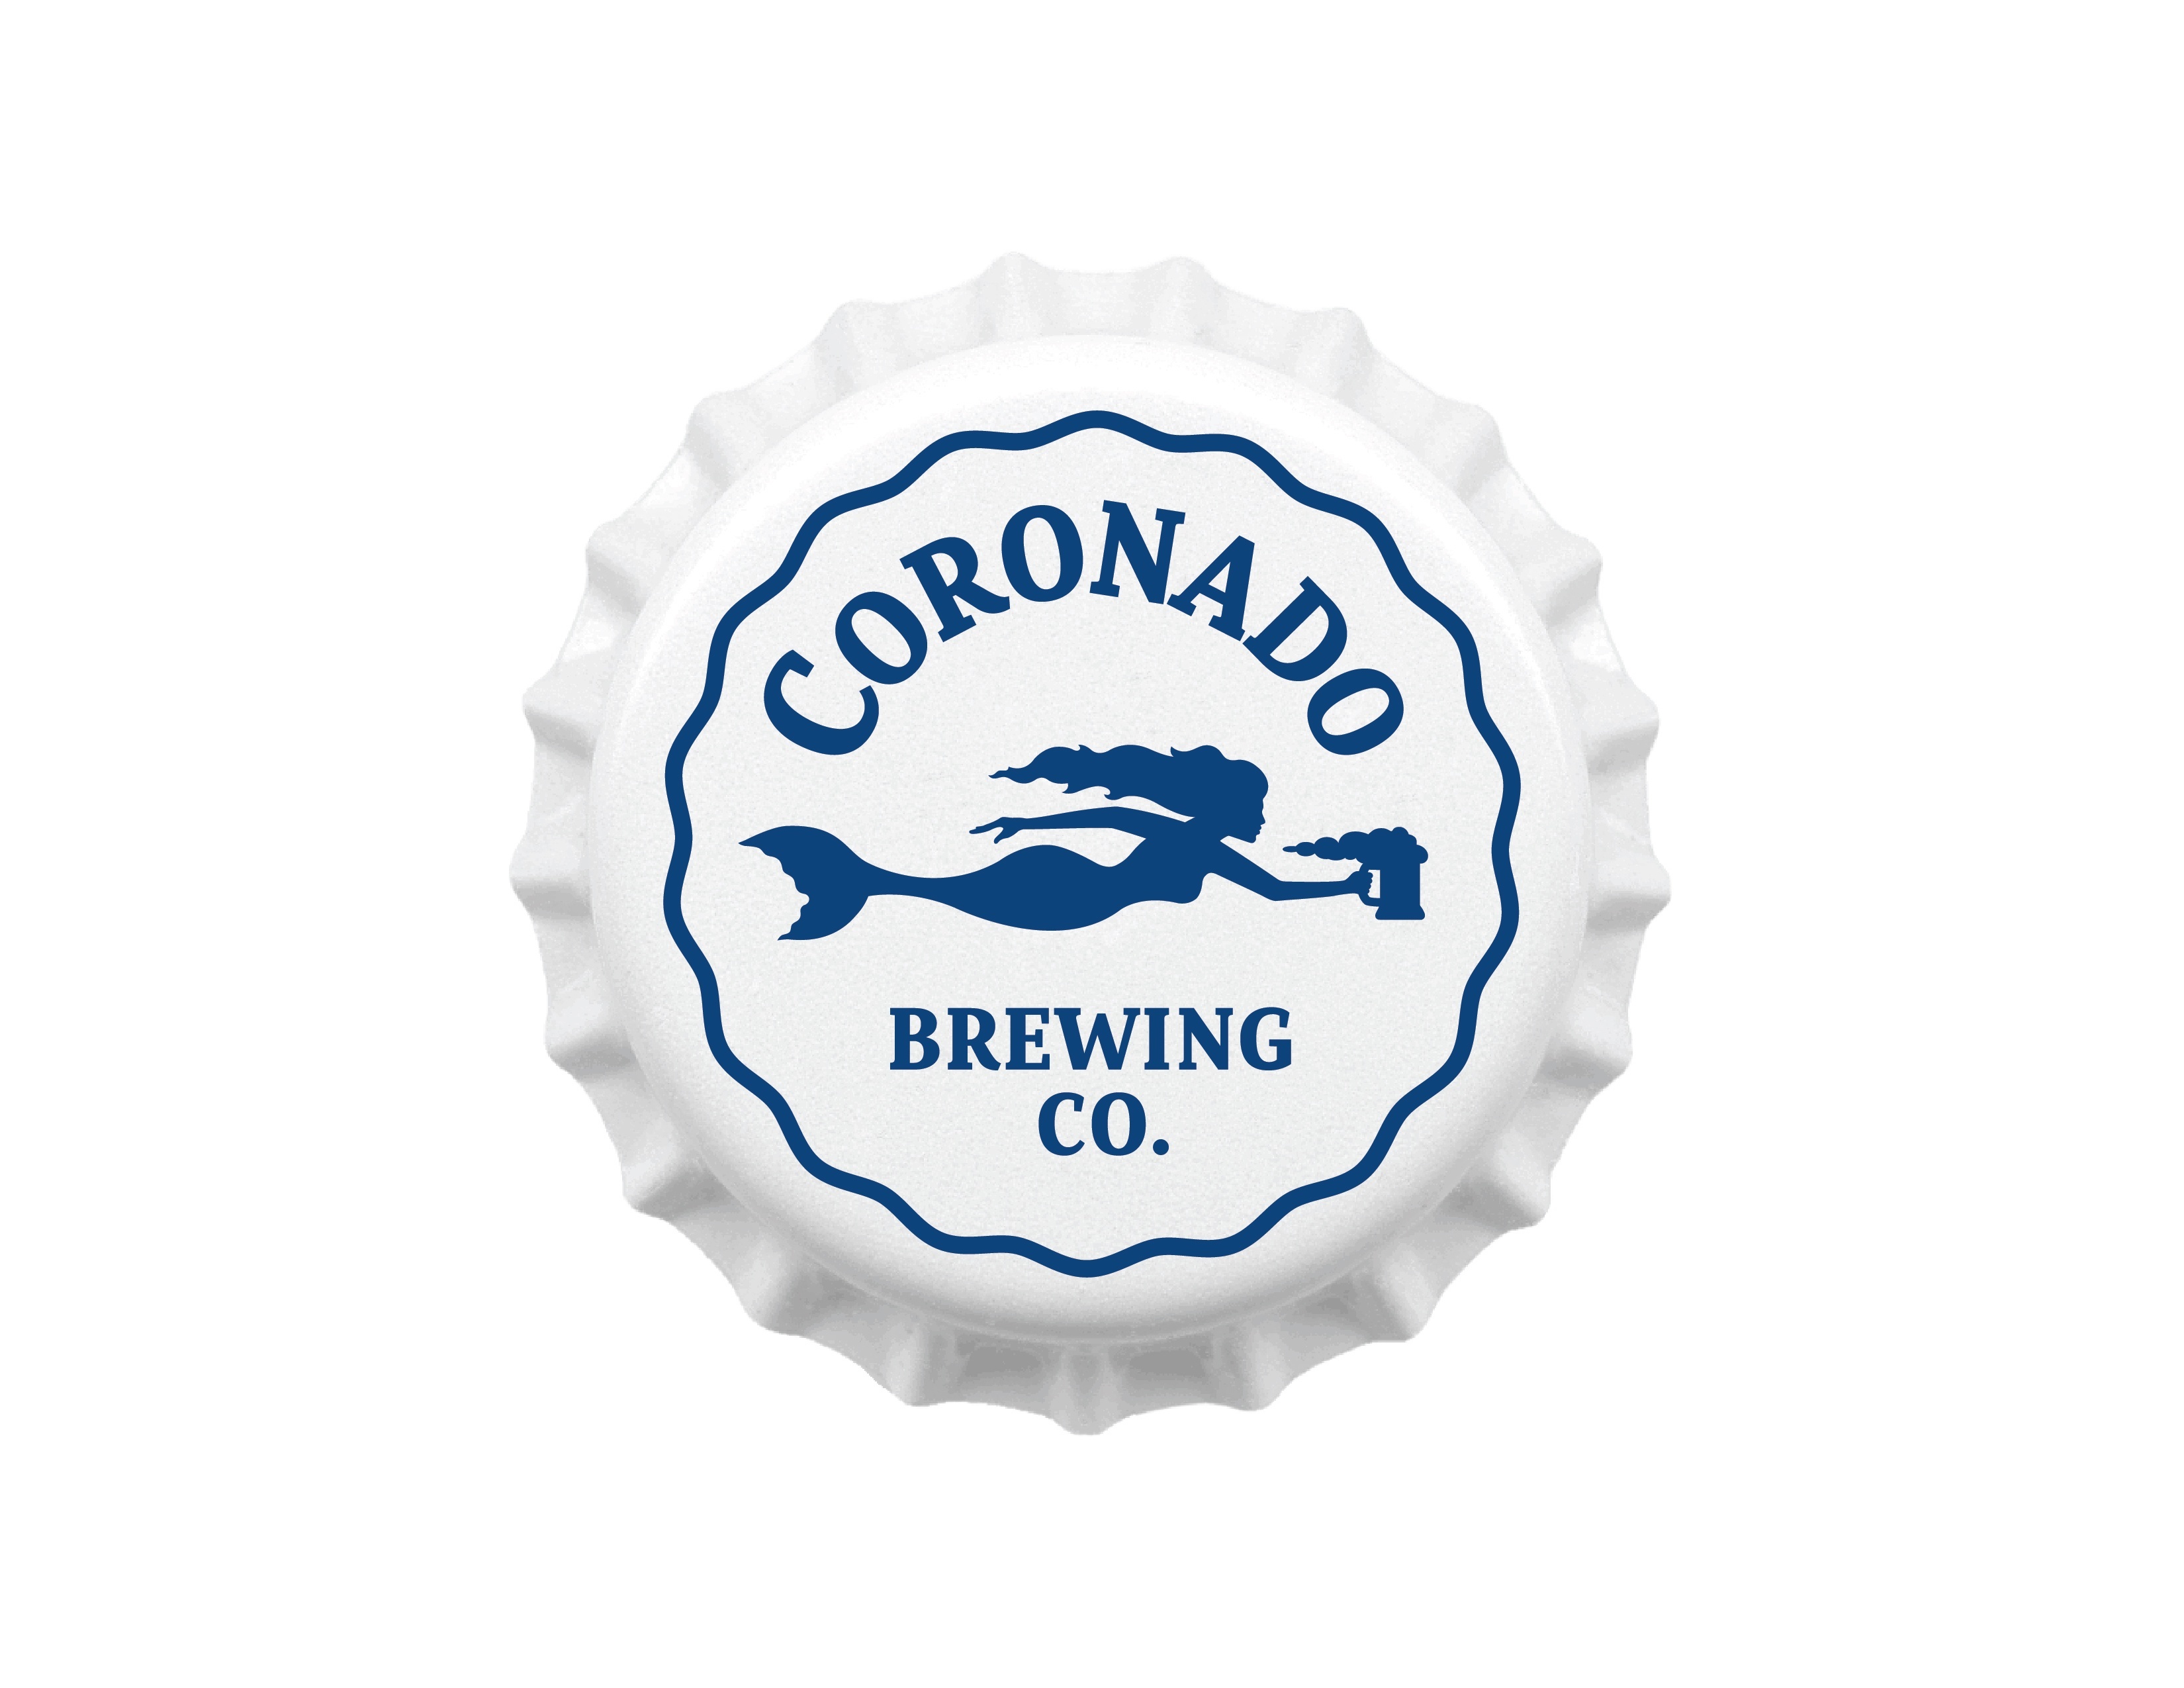 CORONADO BREWING COMPANY mermaid Idiot Islander STICKER decal craft beer brewery 